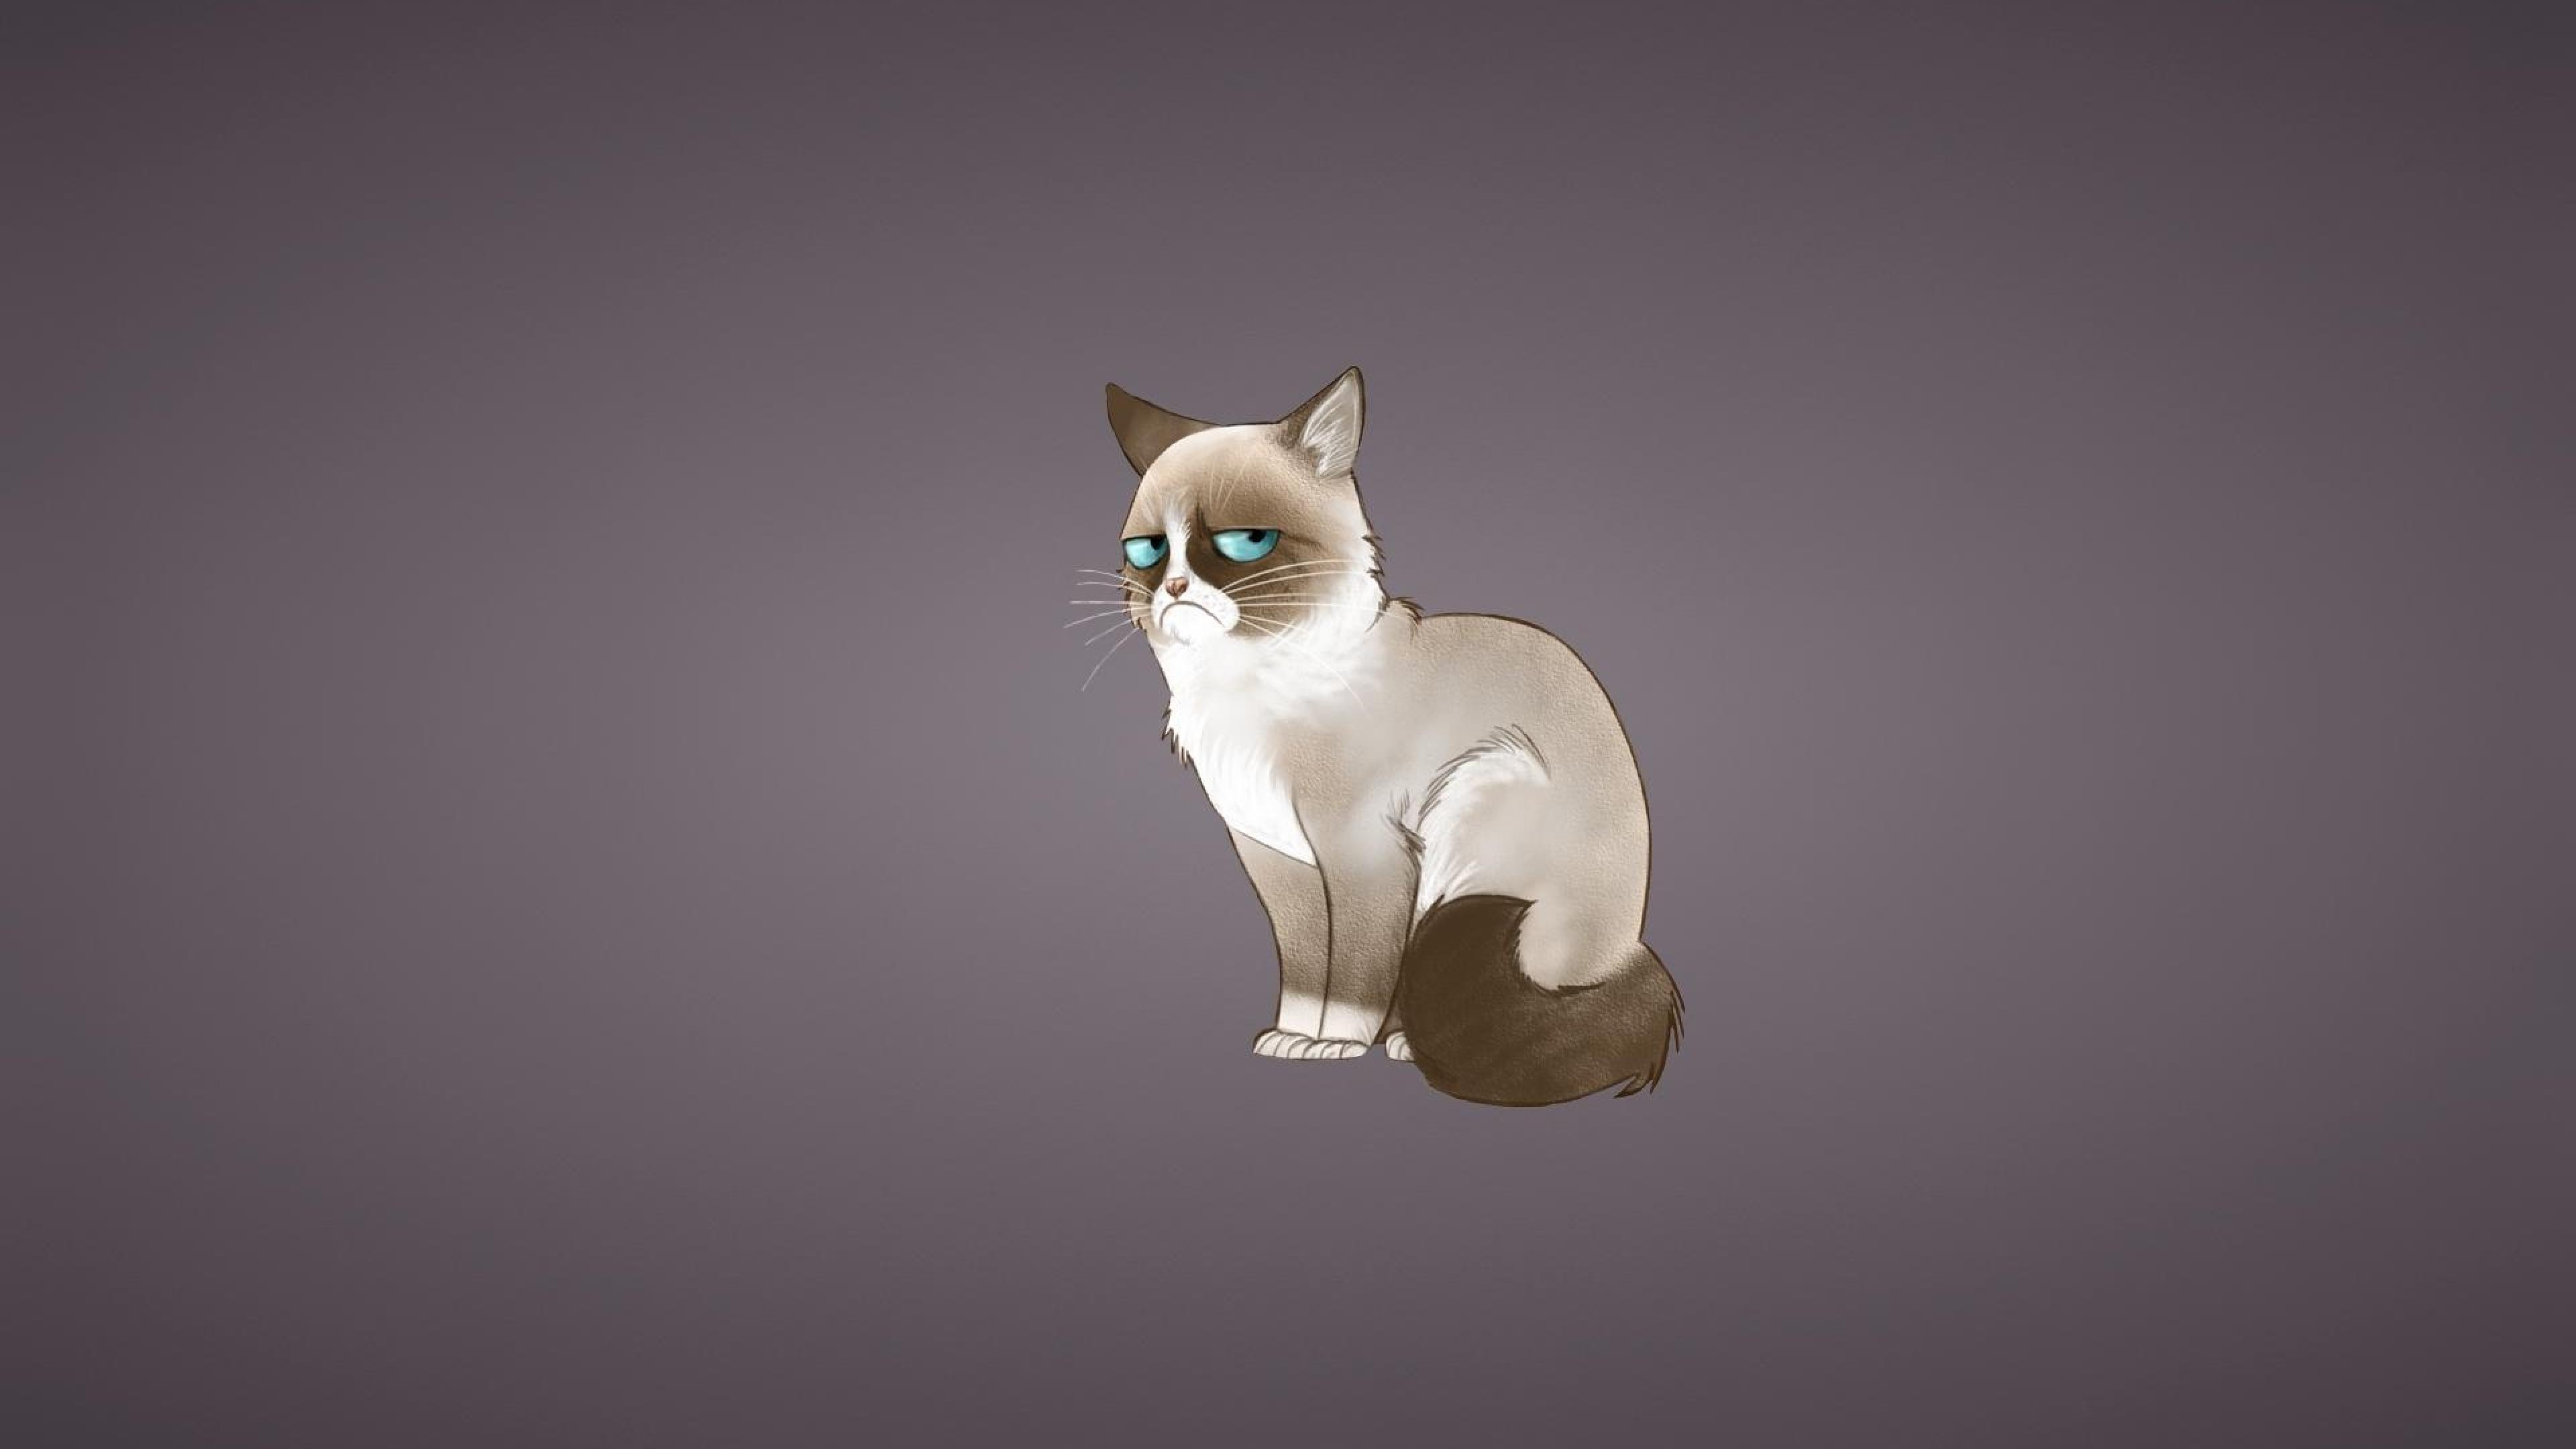 Grumpy Cat Iphone Wallpapers